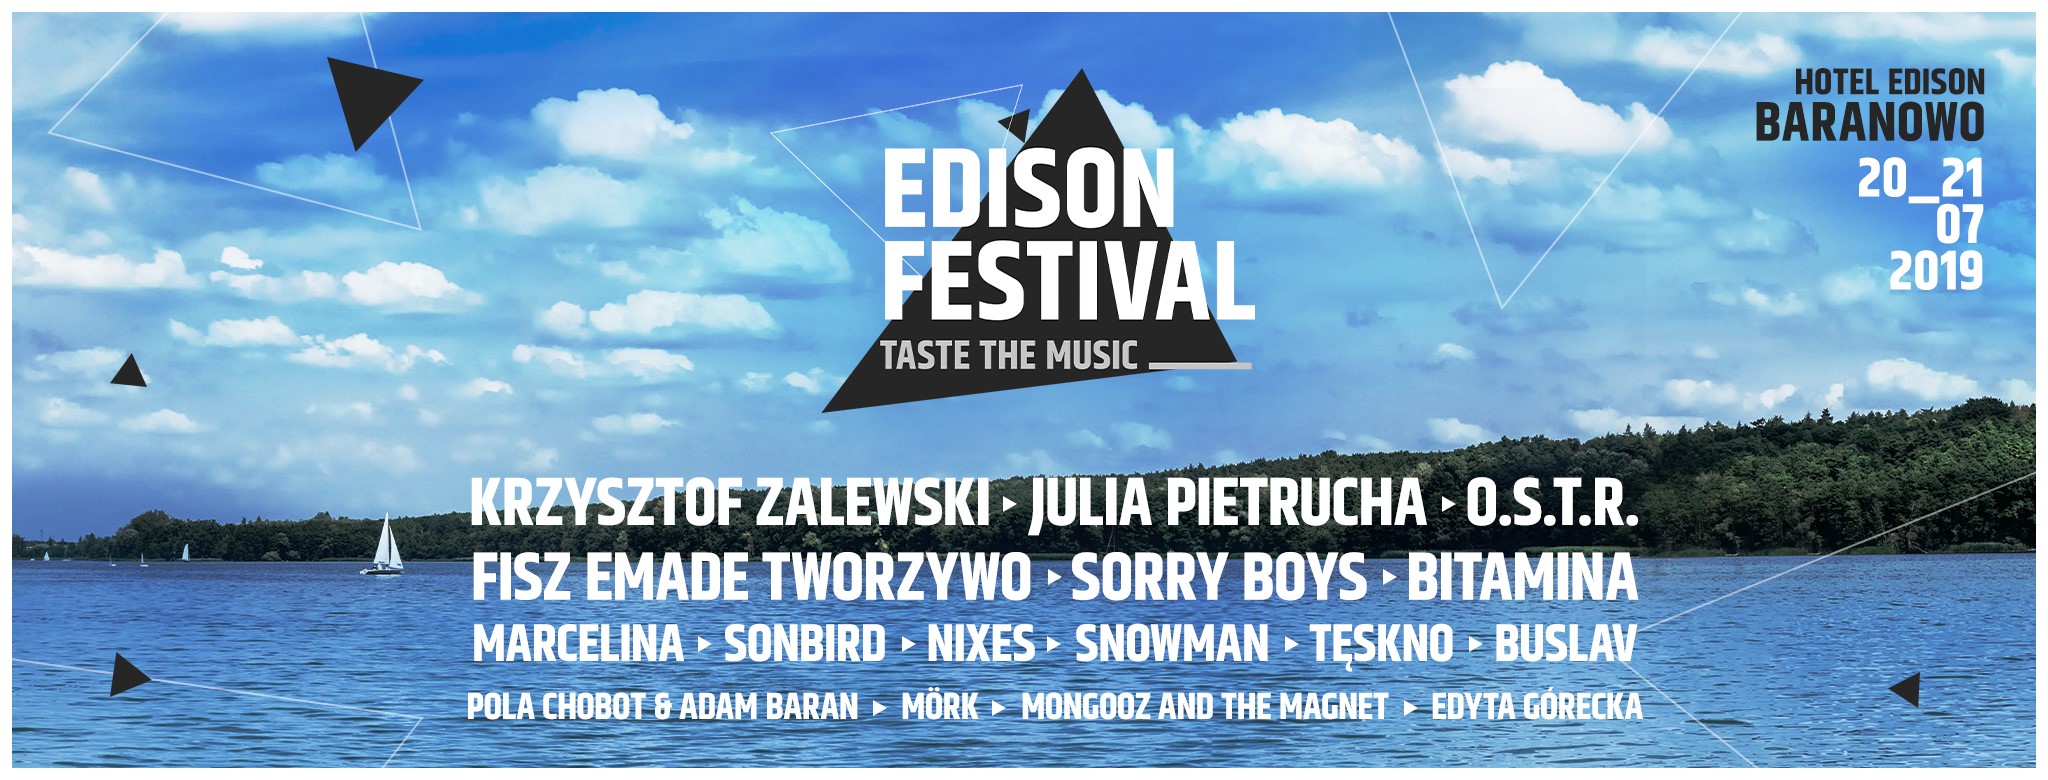 Edison Festival - Taste The Music 2019